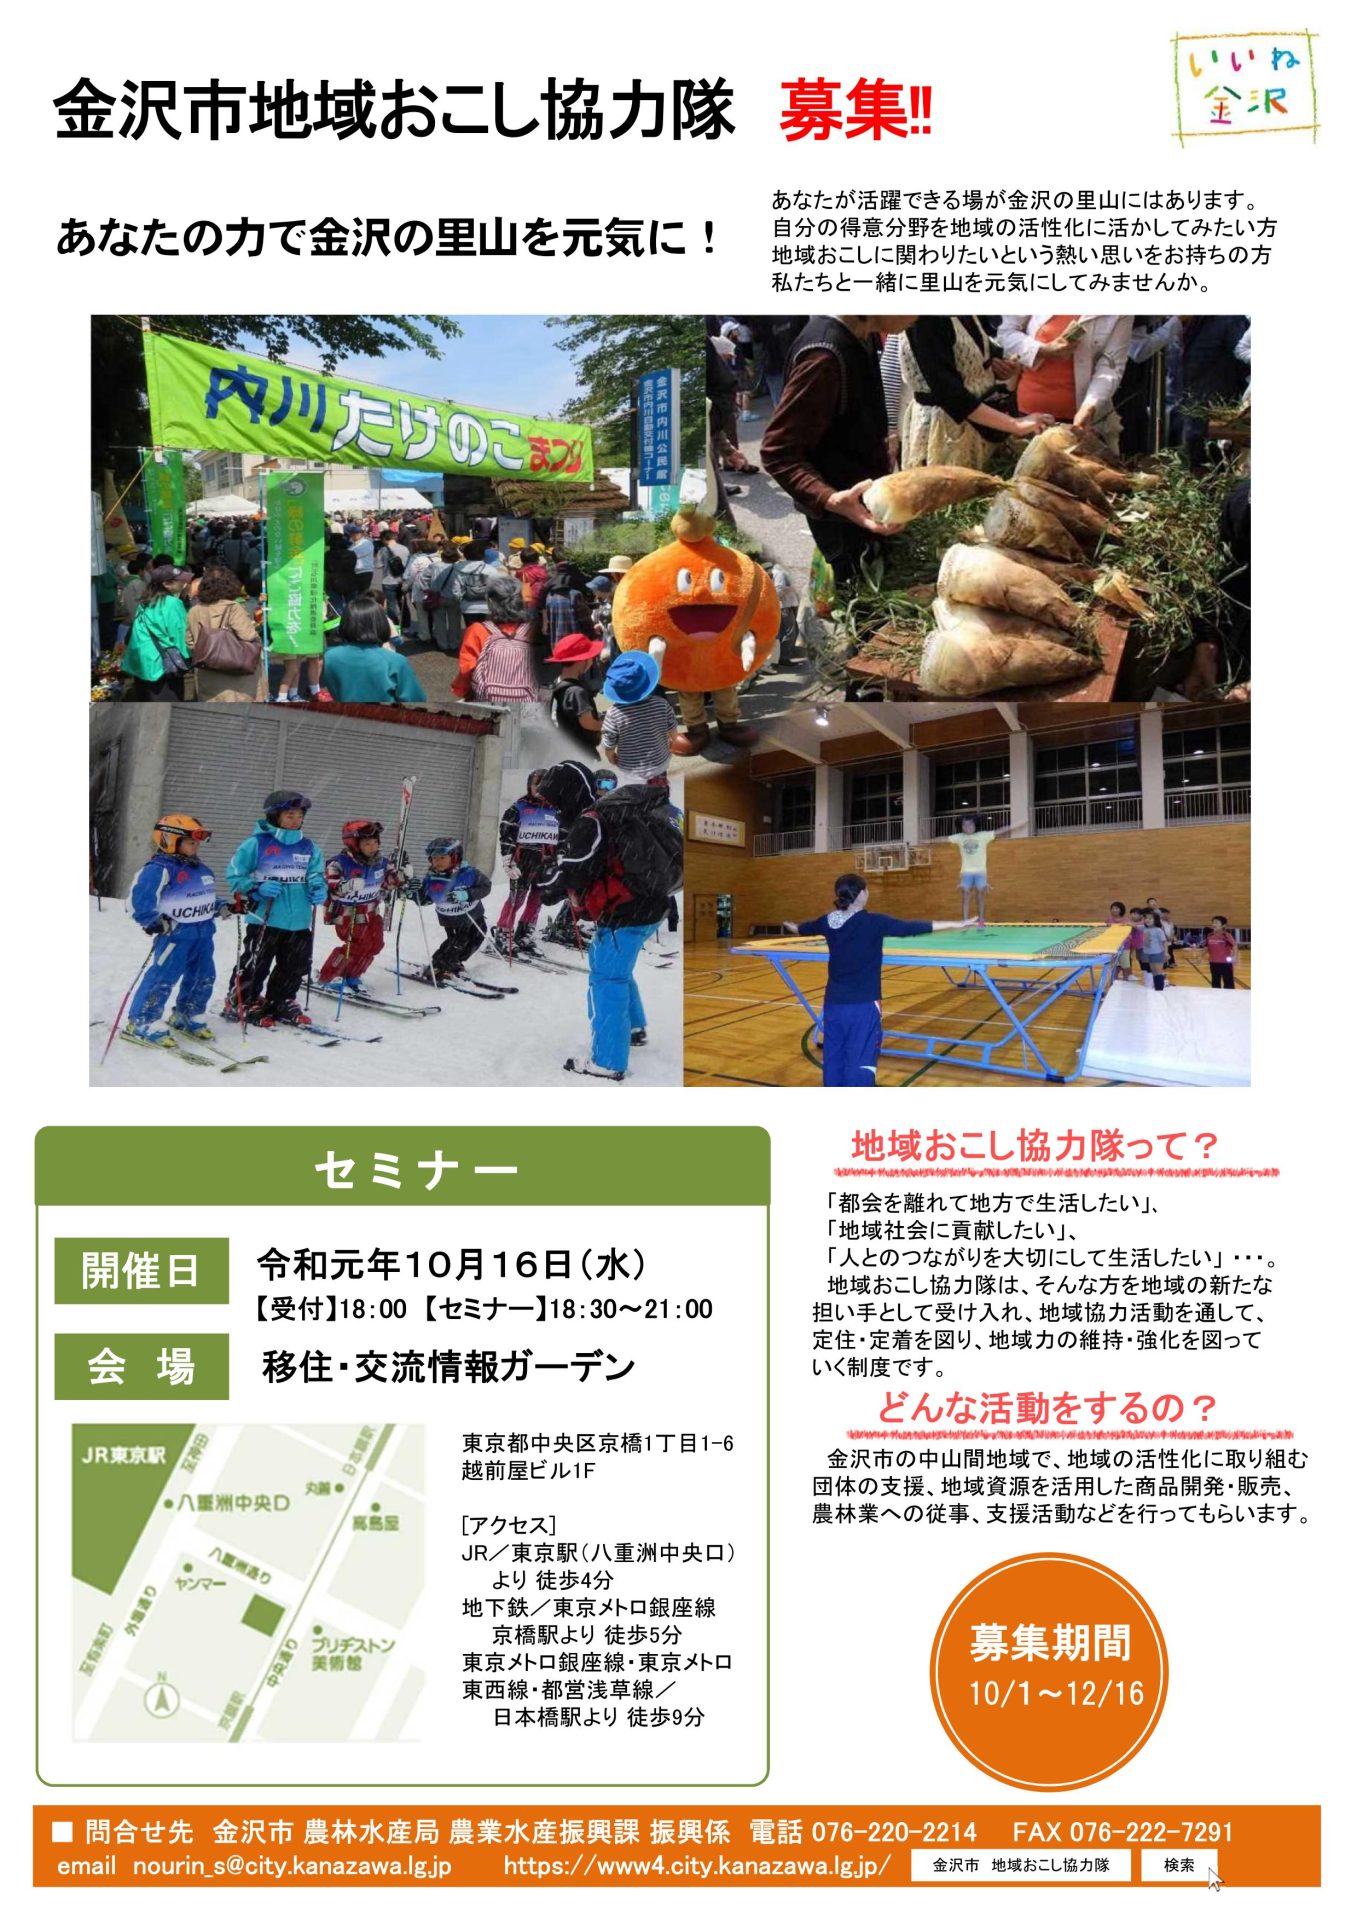 【金沢市も参加します！】地域おこし協力隊合同募集セミナー | 移住関連イベント情報